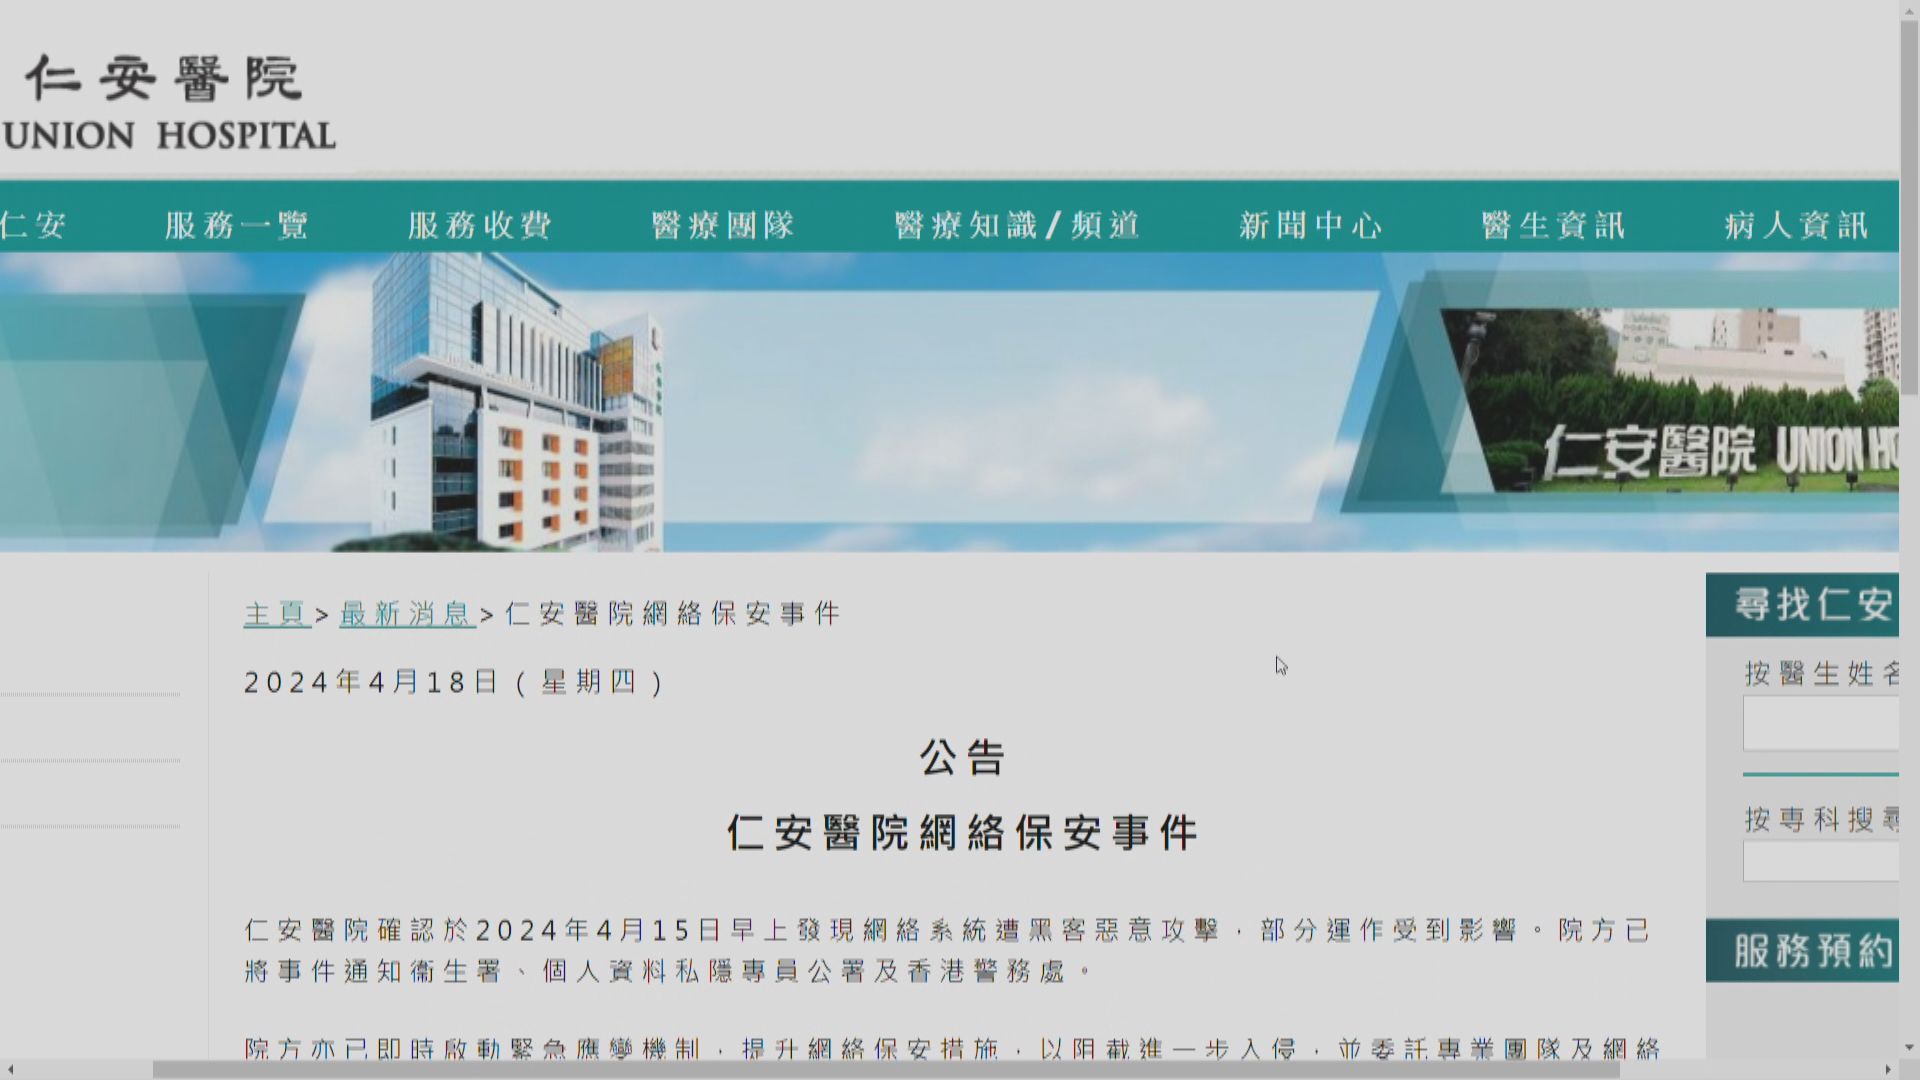 仁安醫院網絡系統遭黑客攻擊